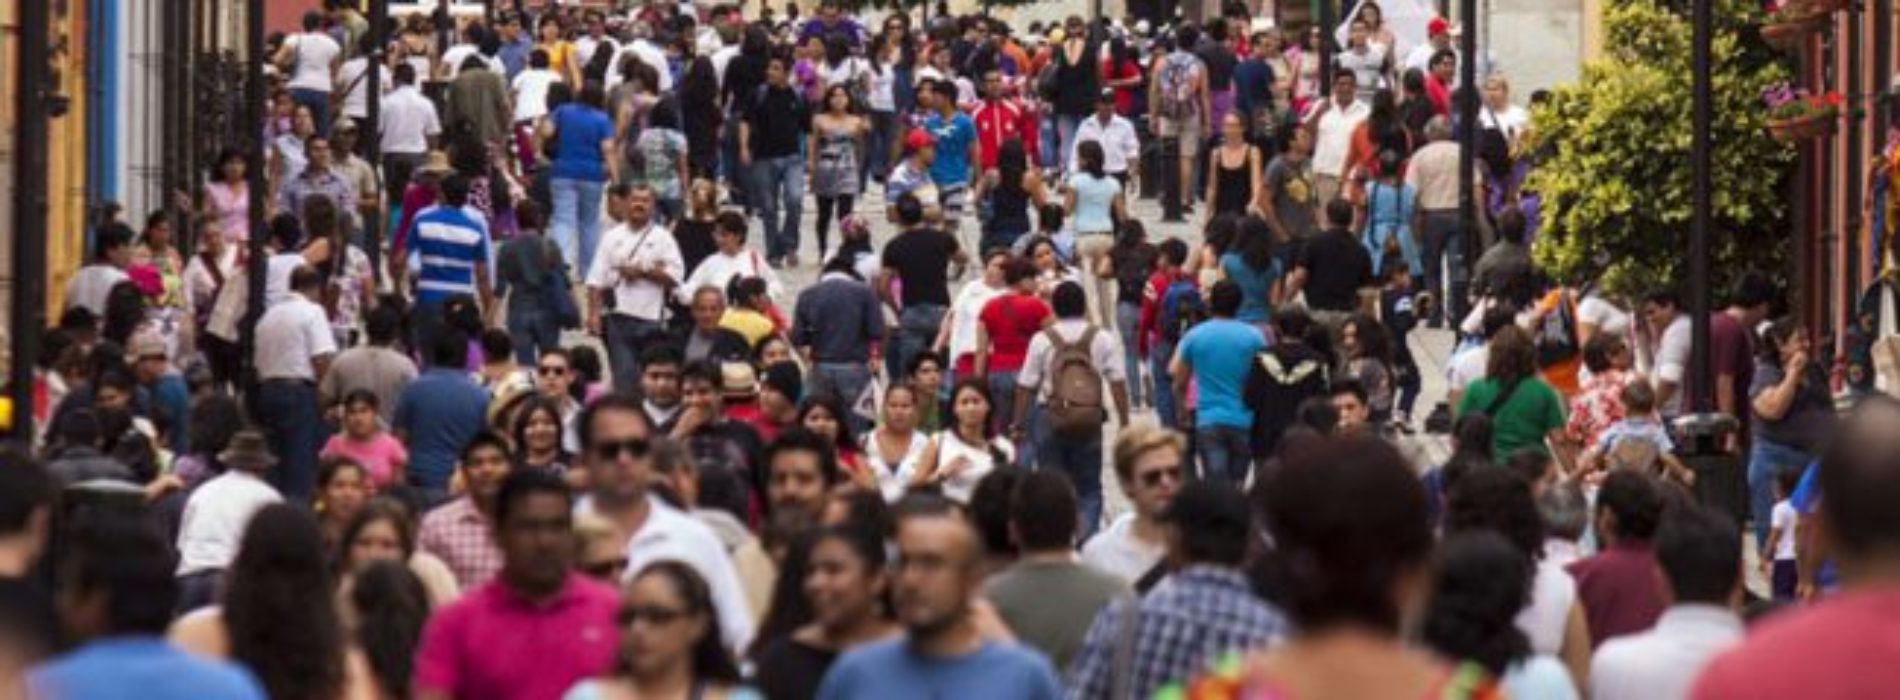 60, 000 turistas alistan maletas para vacacionar en
Oaxaca